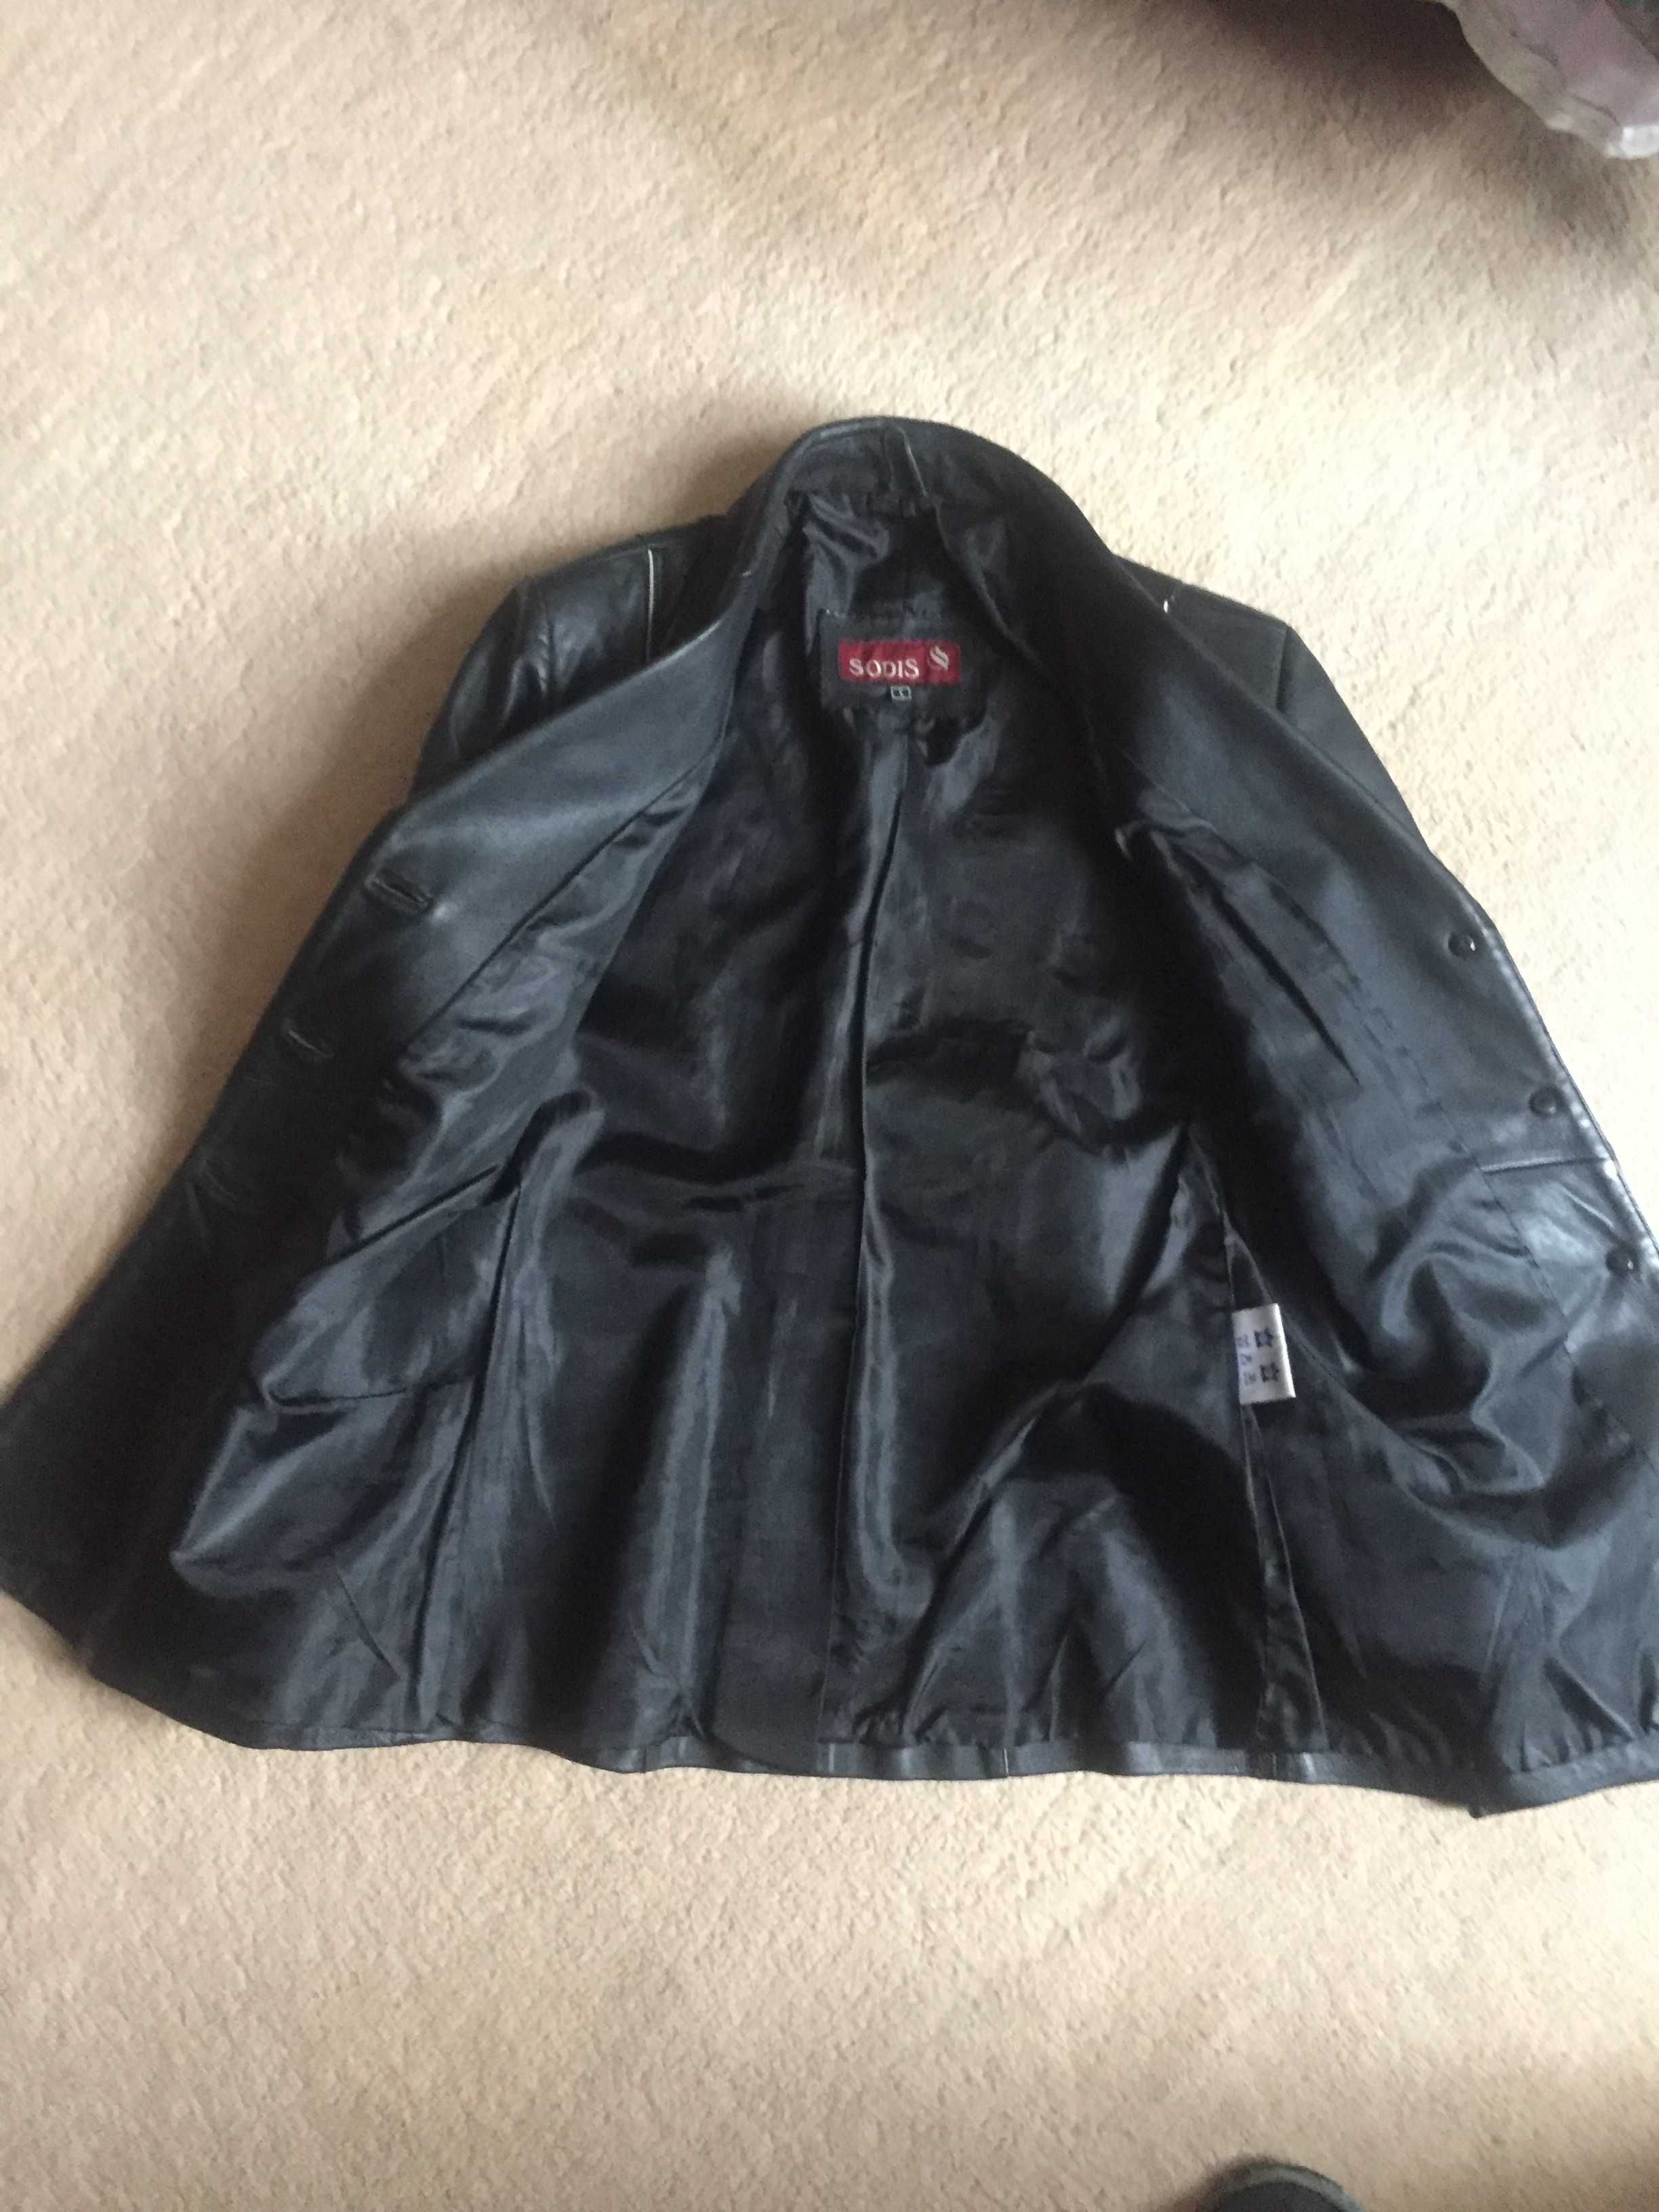 Женский кожаный пиджак р. 46 (L), производство Южная Корея